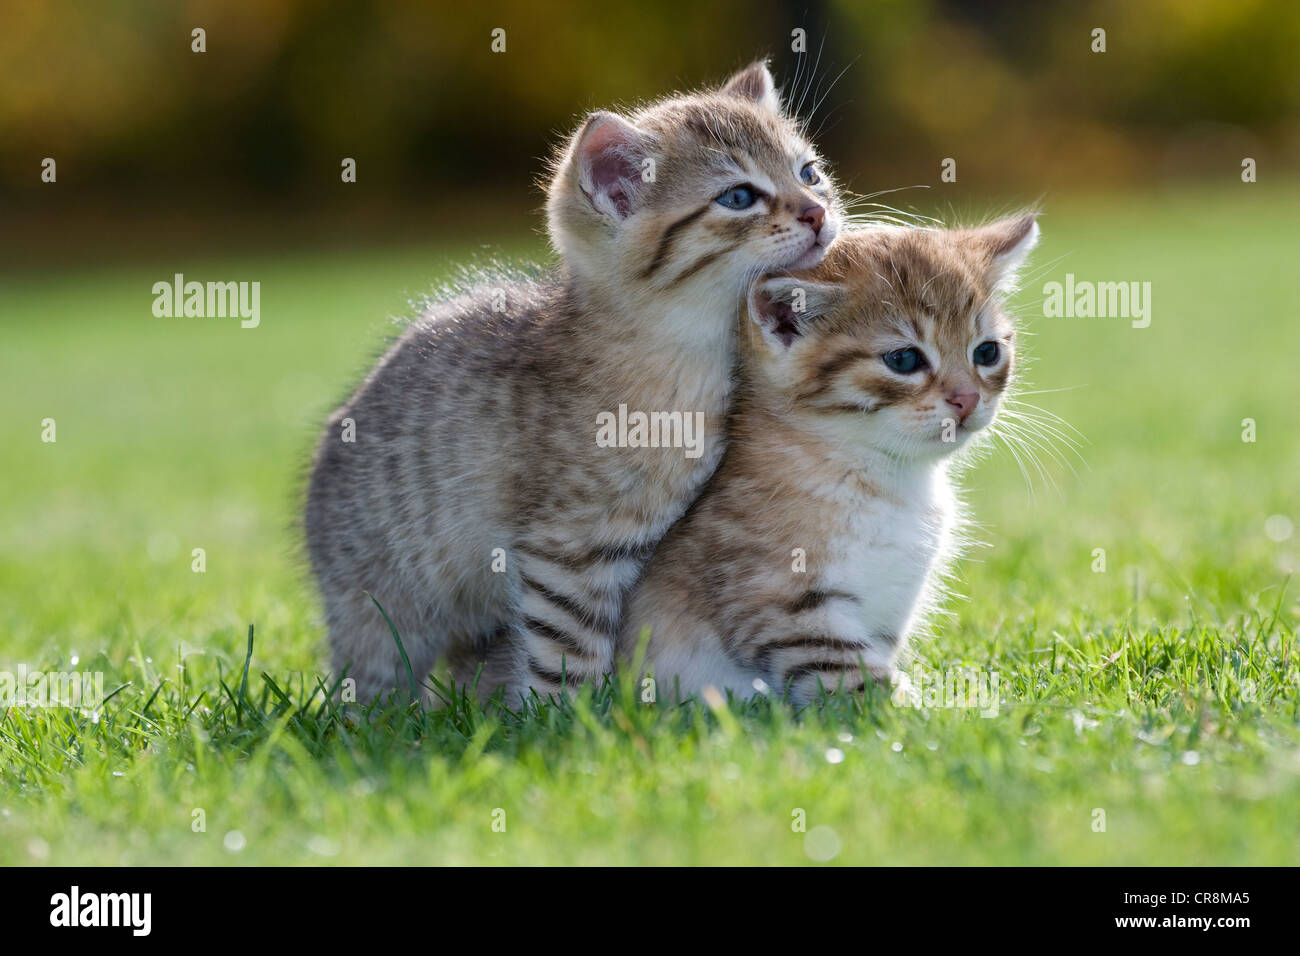 Deux chatons sur l'herbe Banque D'Images